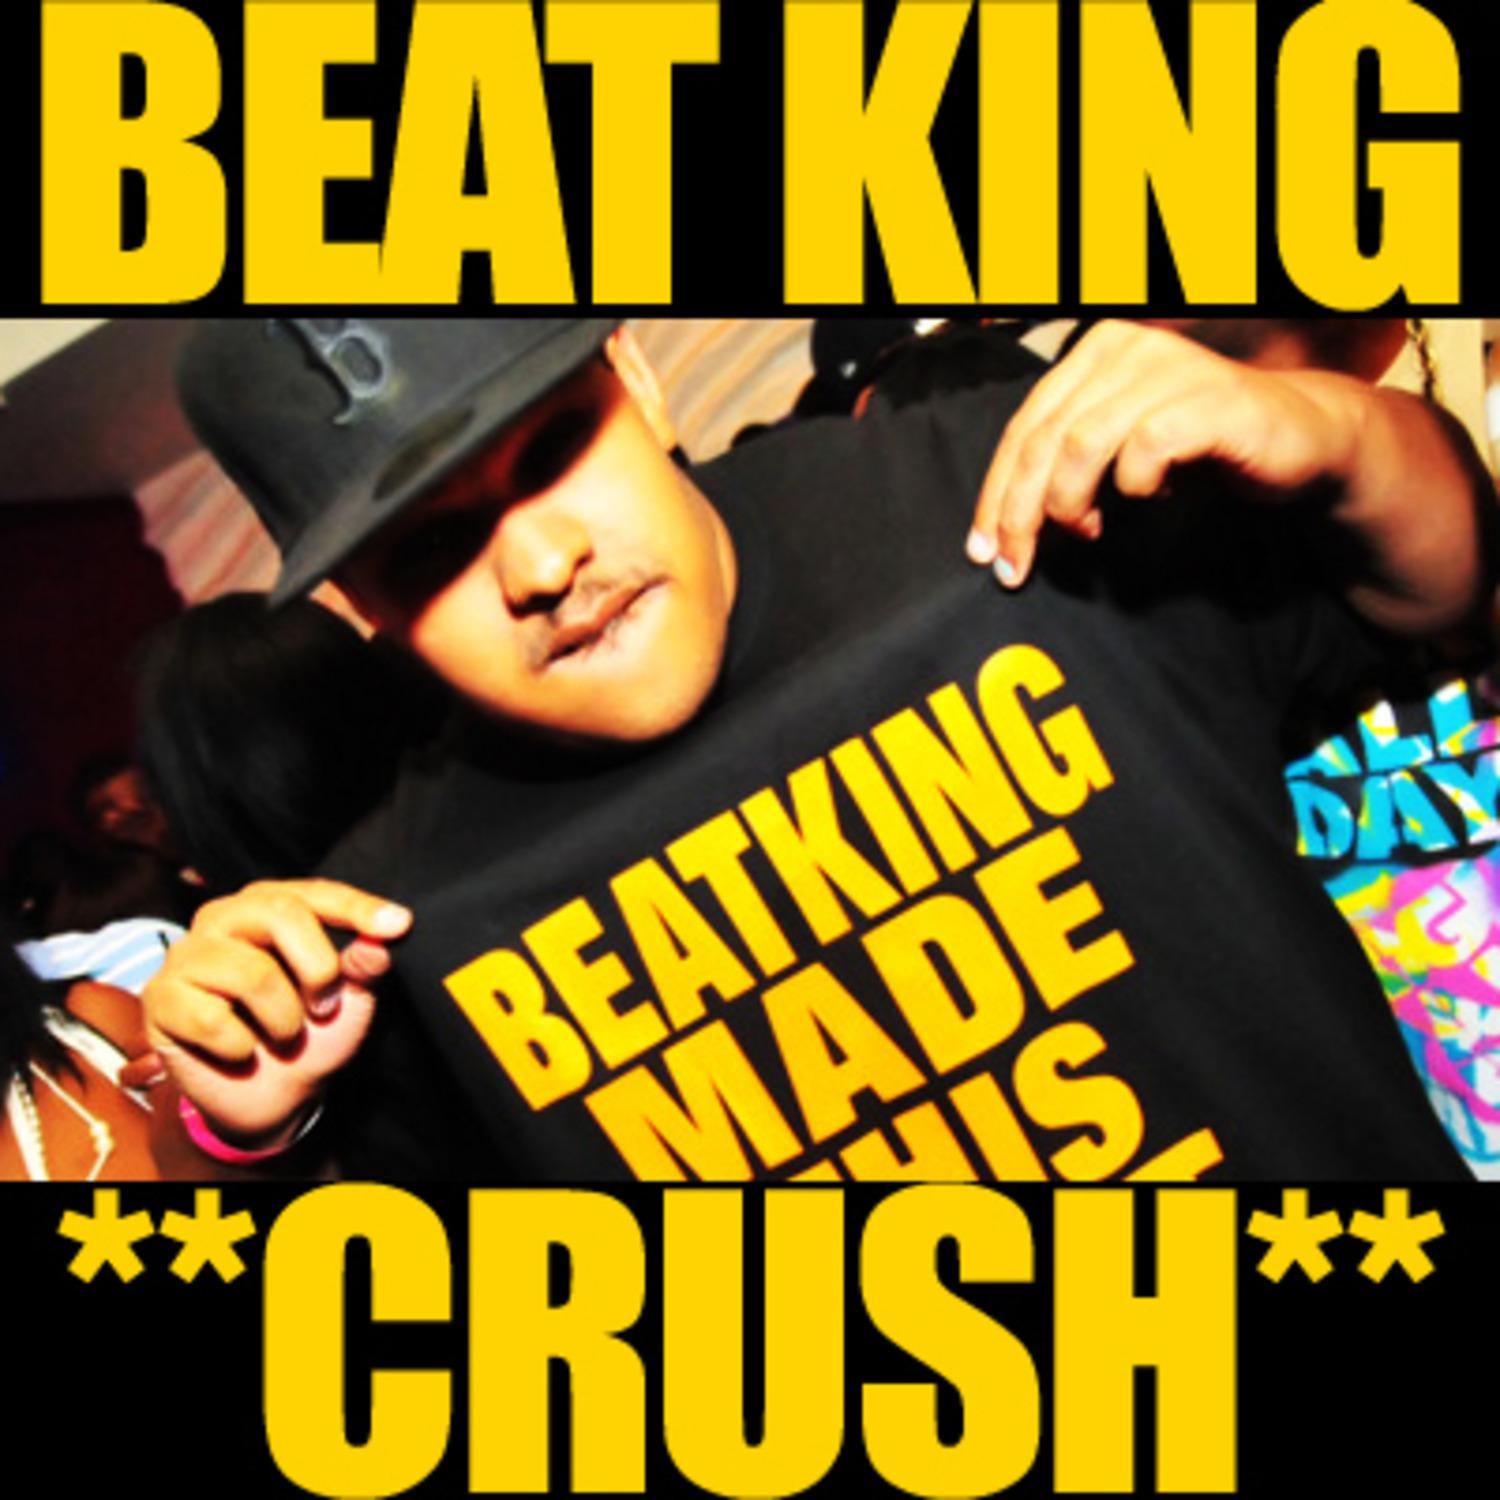 Beatking - Crush